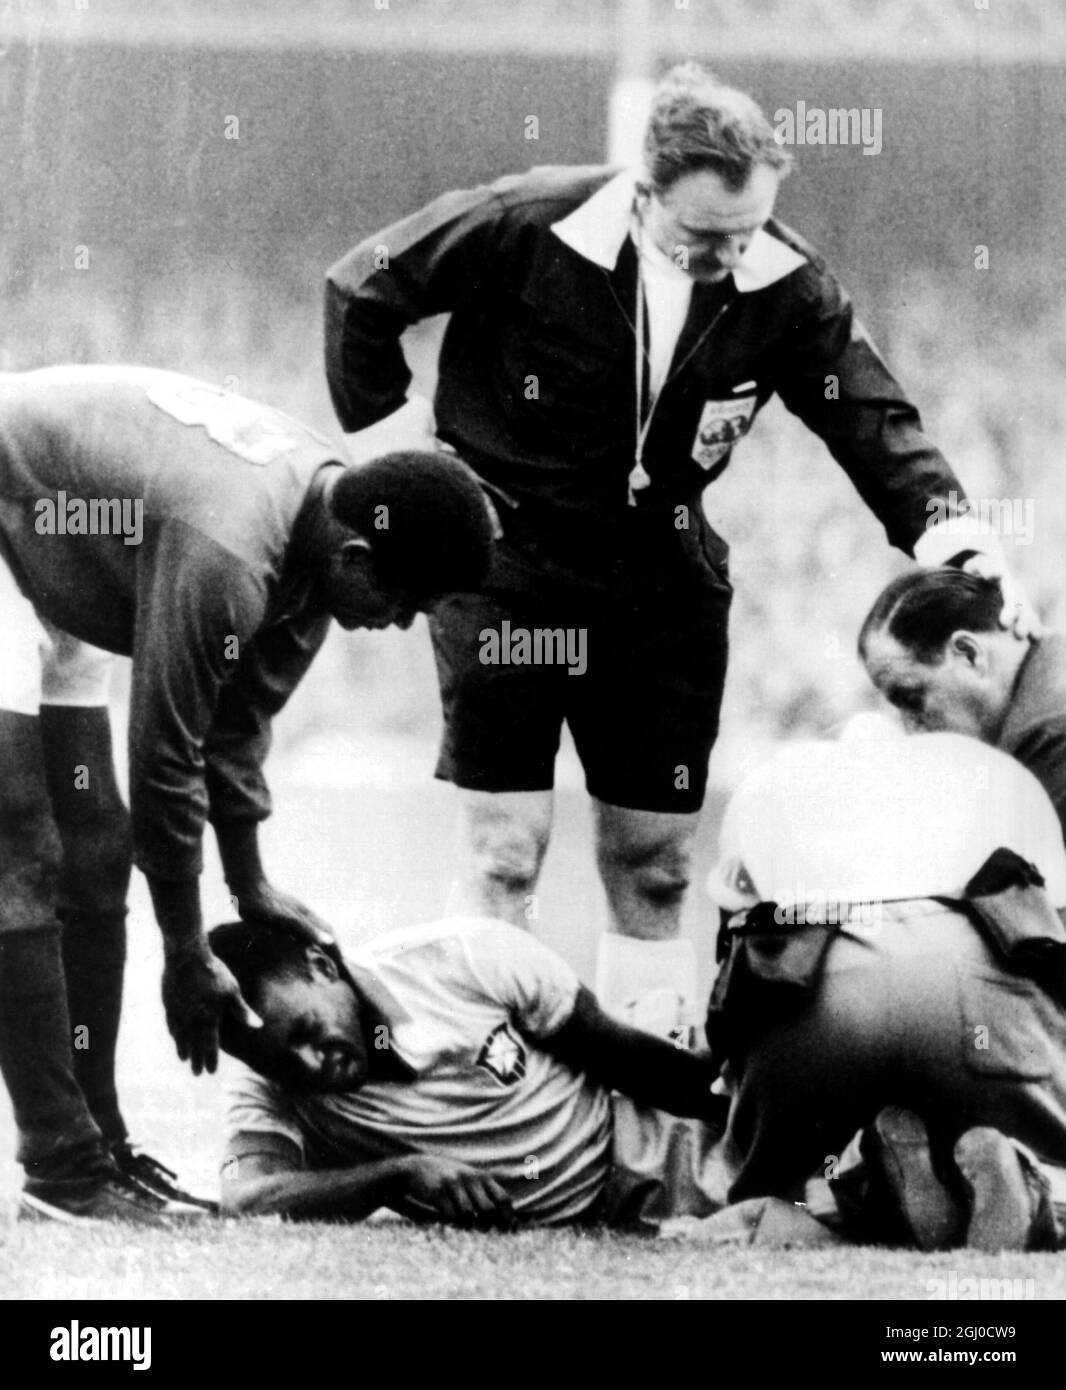 Coupe du monde 1966 Brésil / Portugal Pele, se trouve blessé sur le terrain  alors qu'Americo et le Dr Gosling de l'équipe brésilienne lui assistent.  Eusebio du Portugal (No.13) est vu en